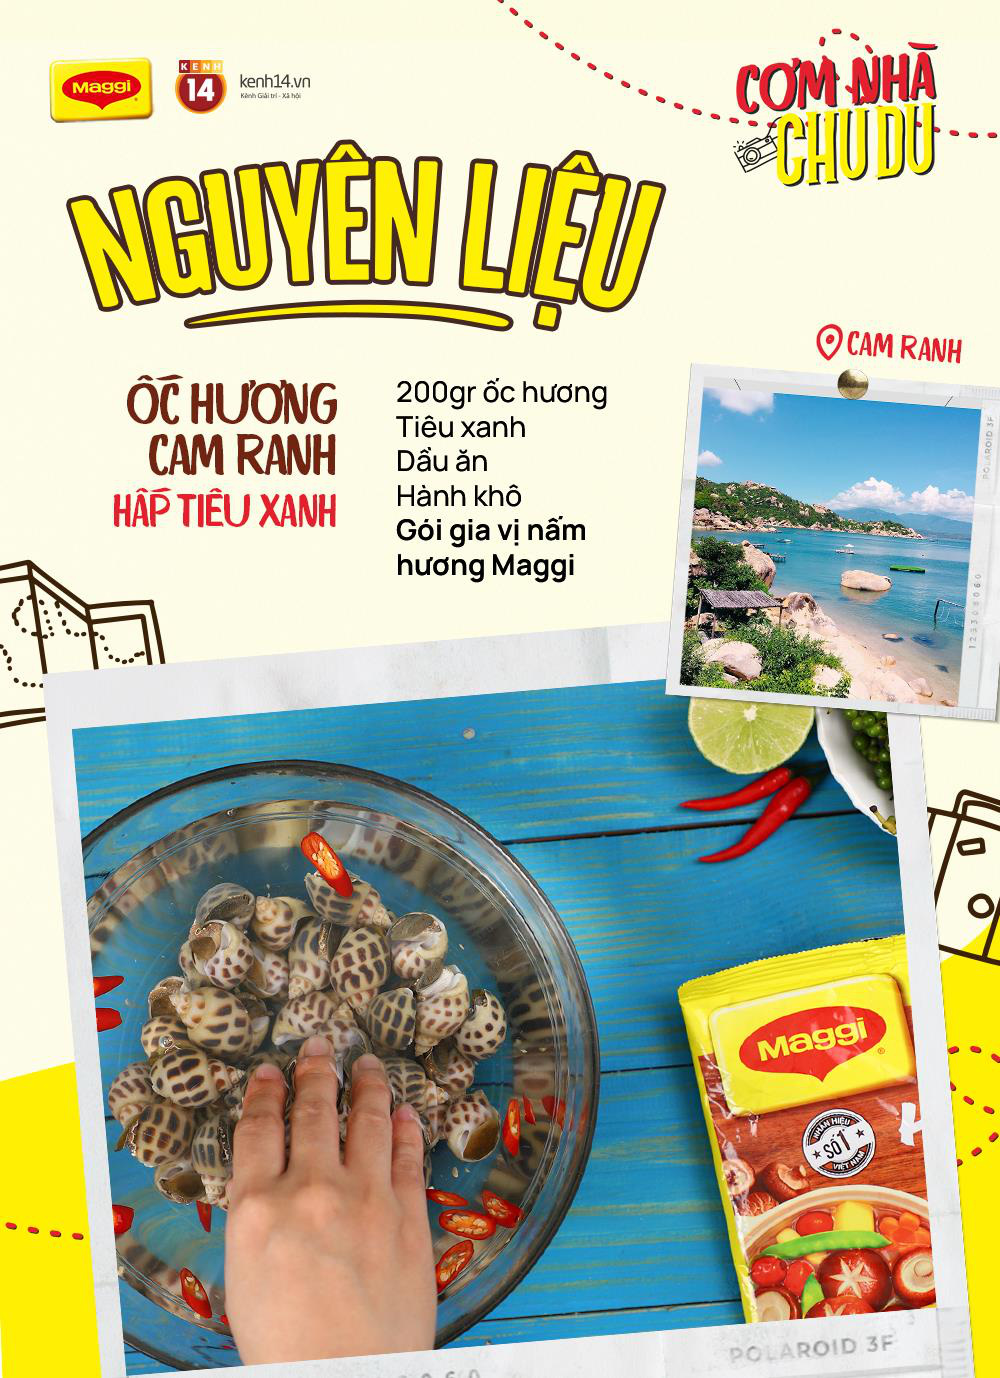 Rủ nhau ăn “Cơm Nhà Chu Du”: Có 1 món hải sản nổi tiếng cho ai mùa hè này muốn đi biển trong vòng “1 nốt nhạc” - Ảnh 1.